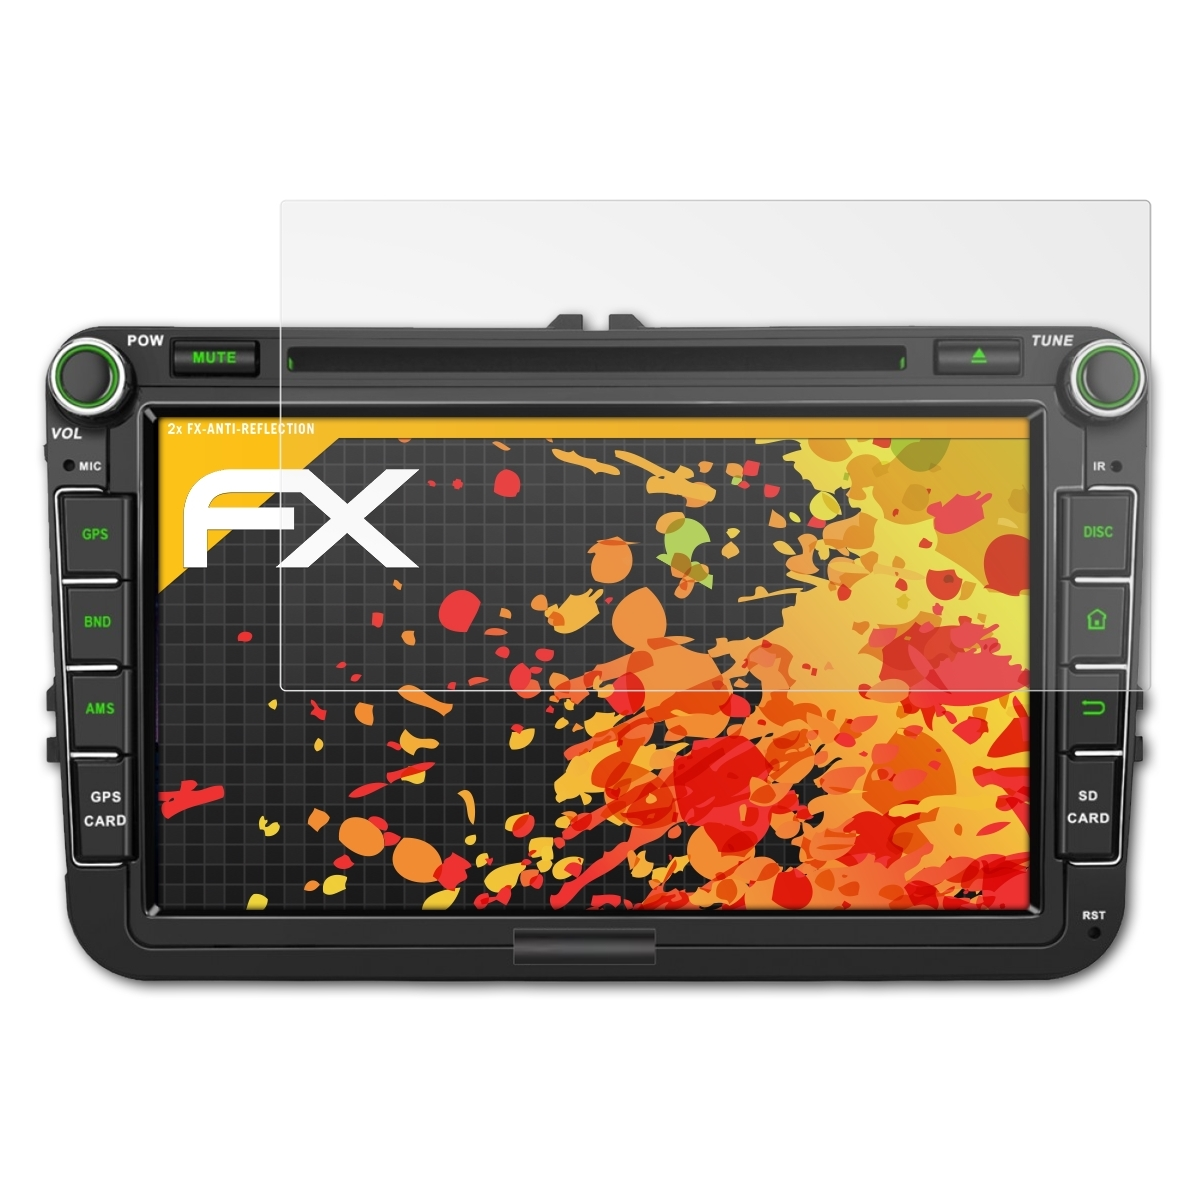 Inch) FX-Antireflex ATFOLIX 2x Pumpkin AE0373B 8 Displayschutz(für